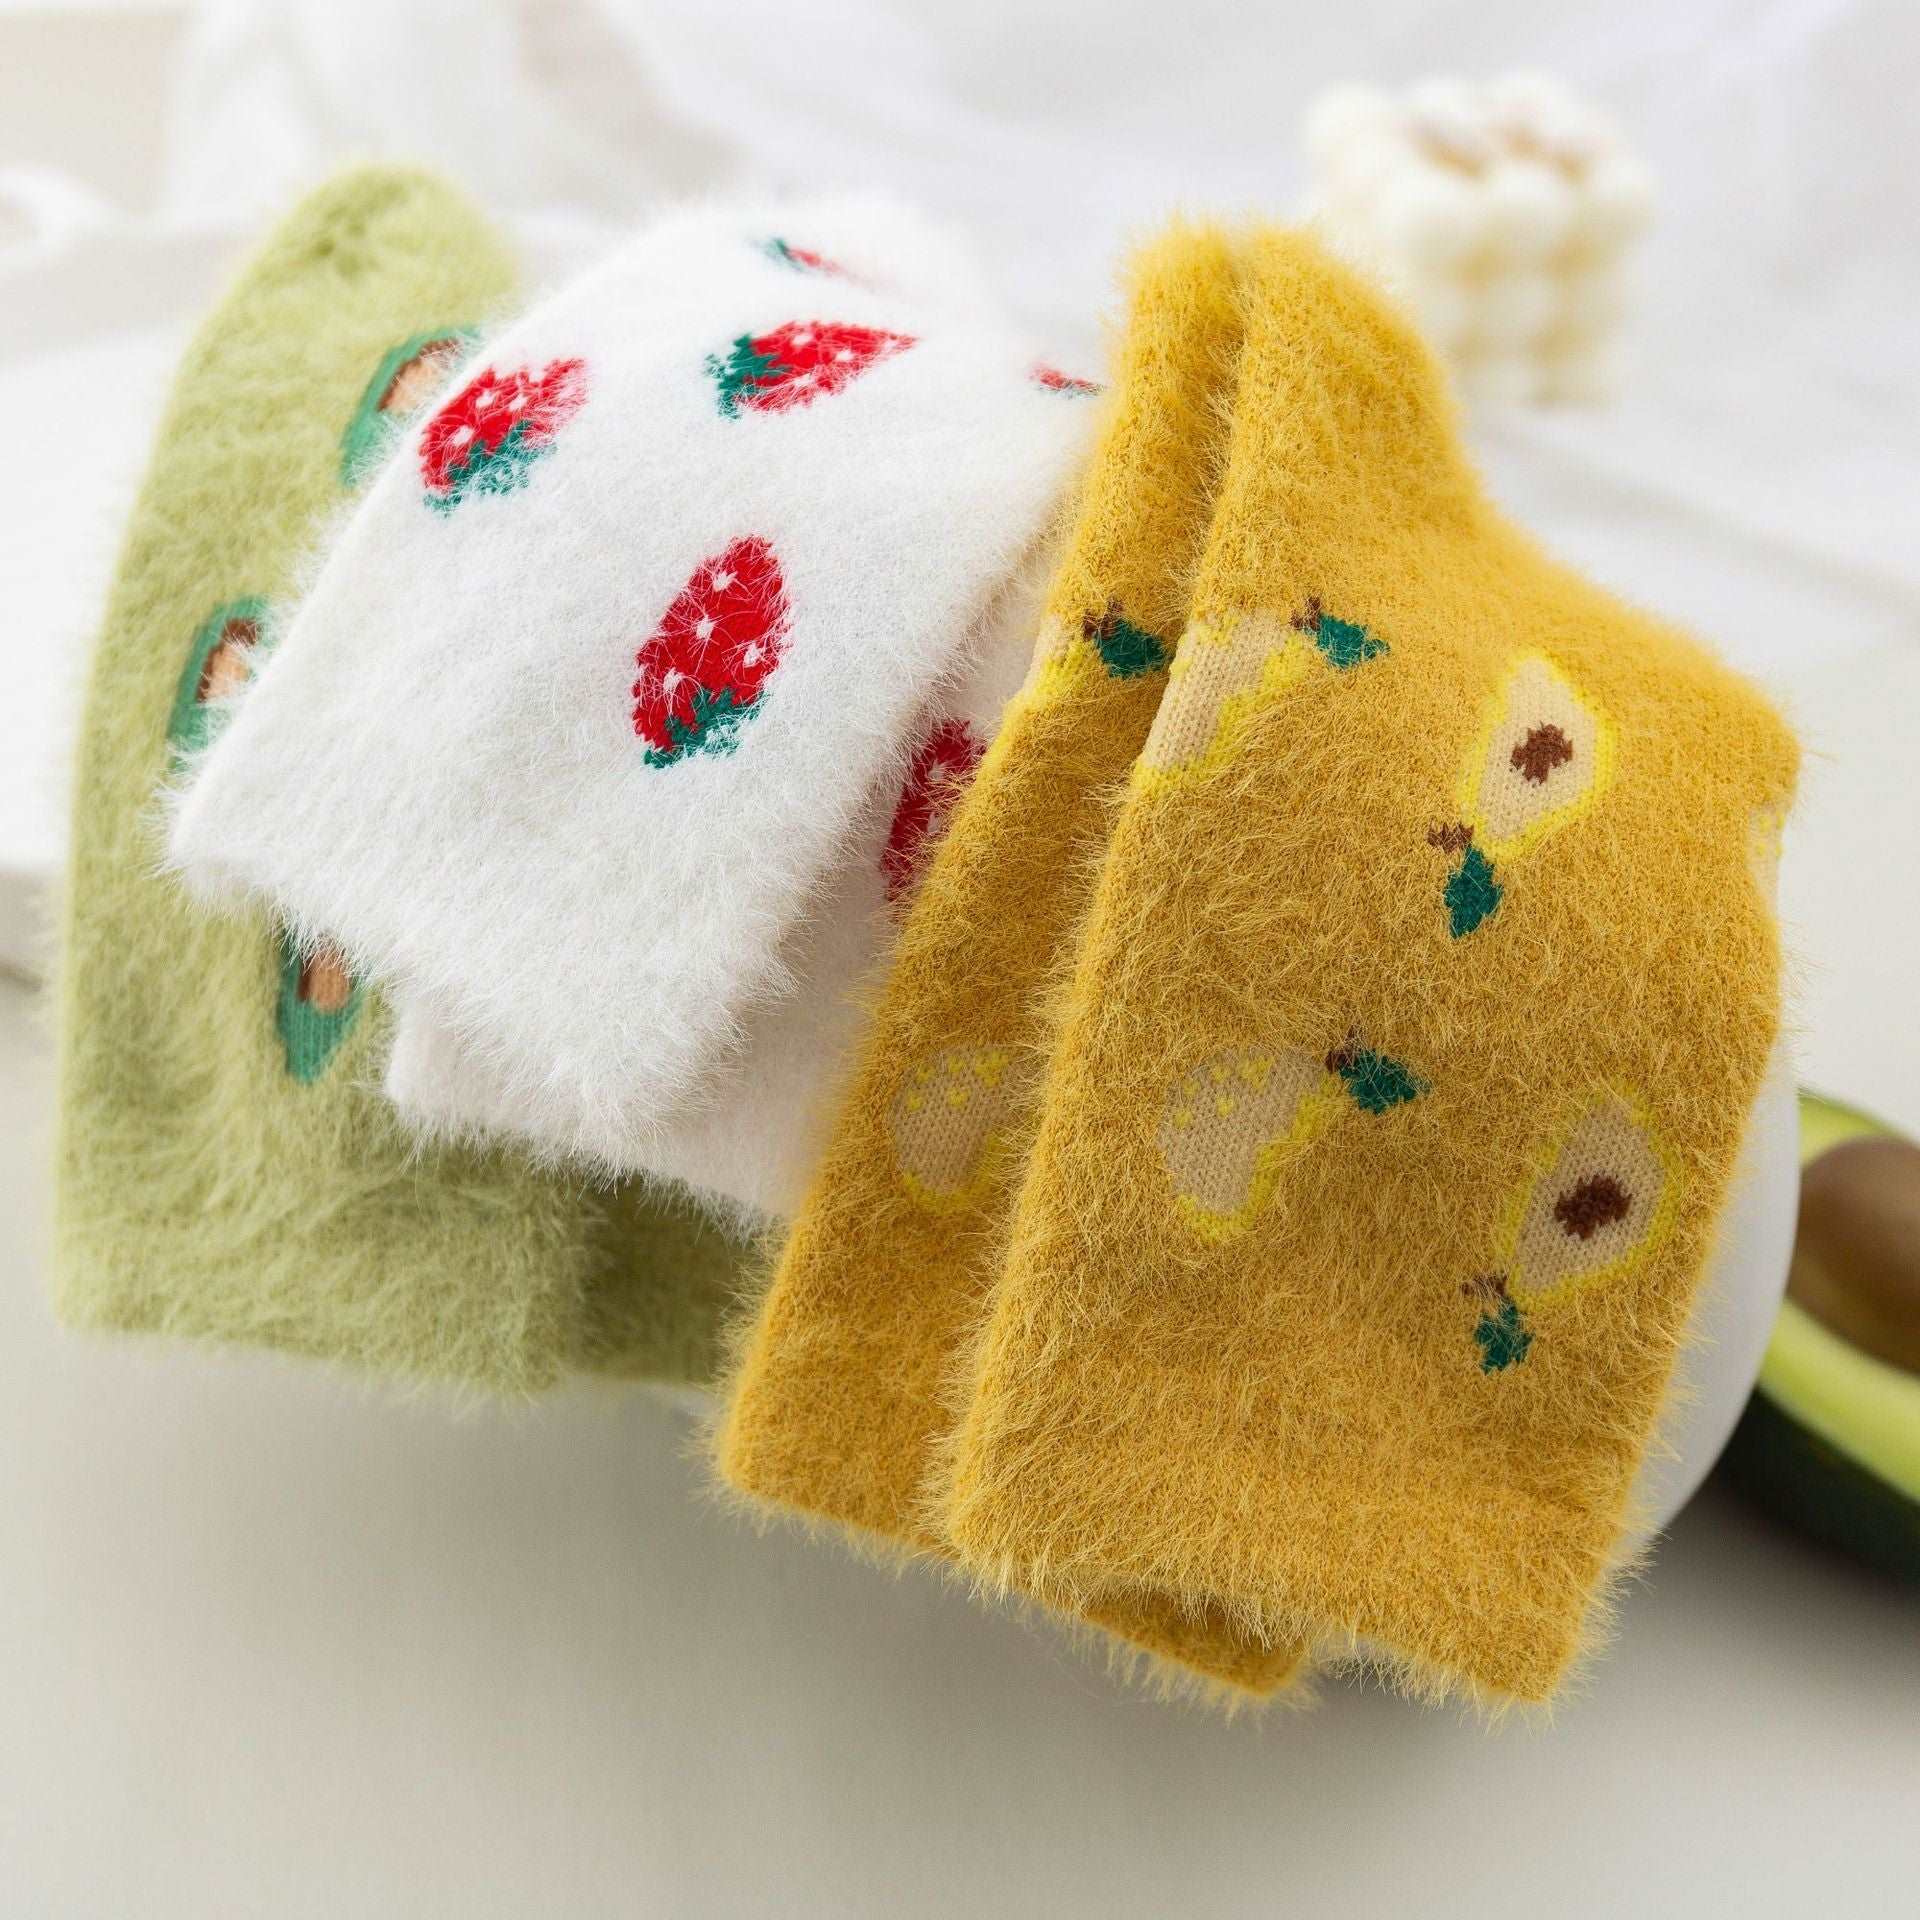 Kawaii Cozy Socks Collection